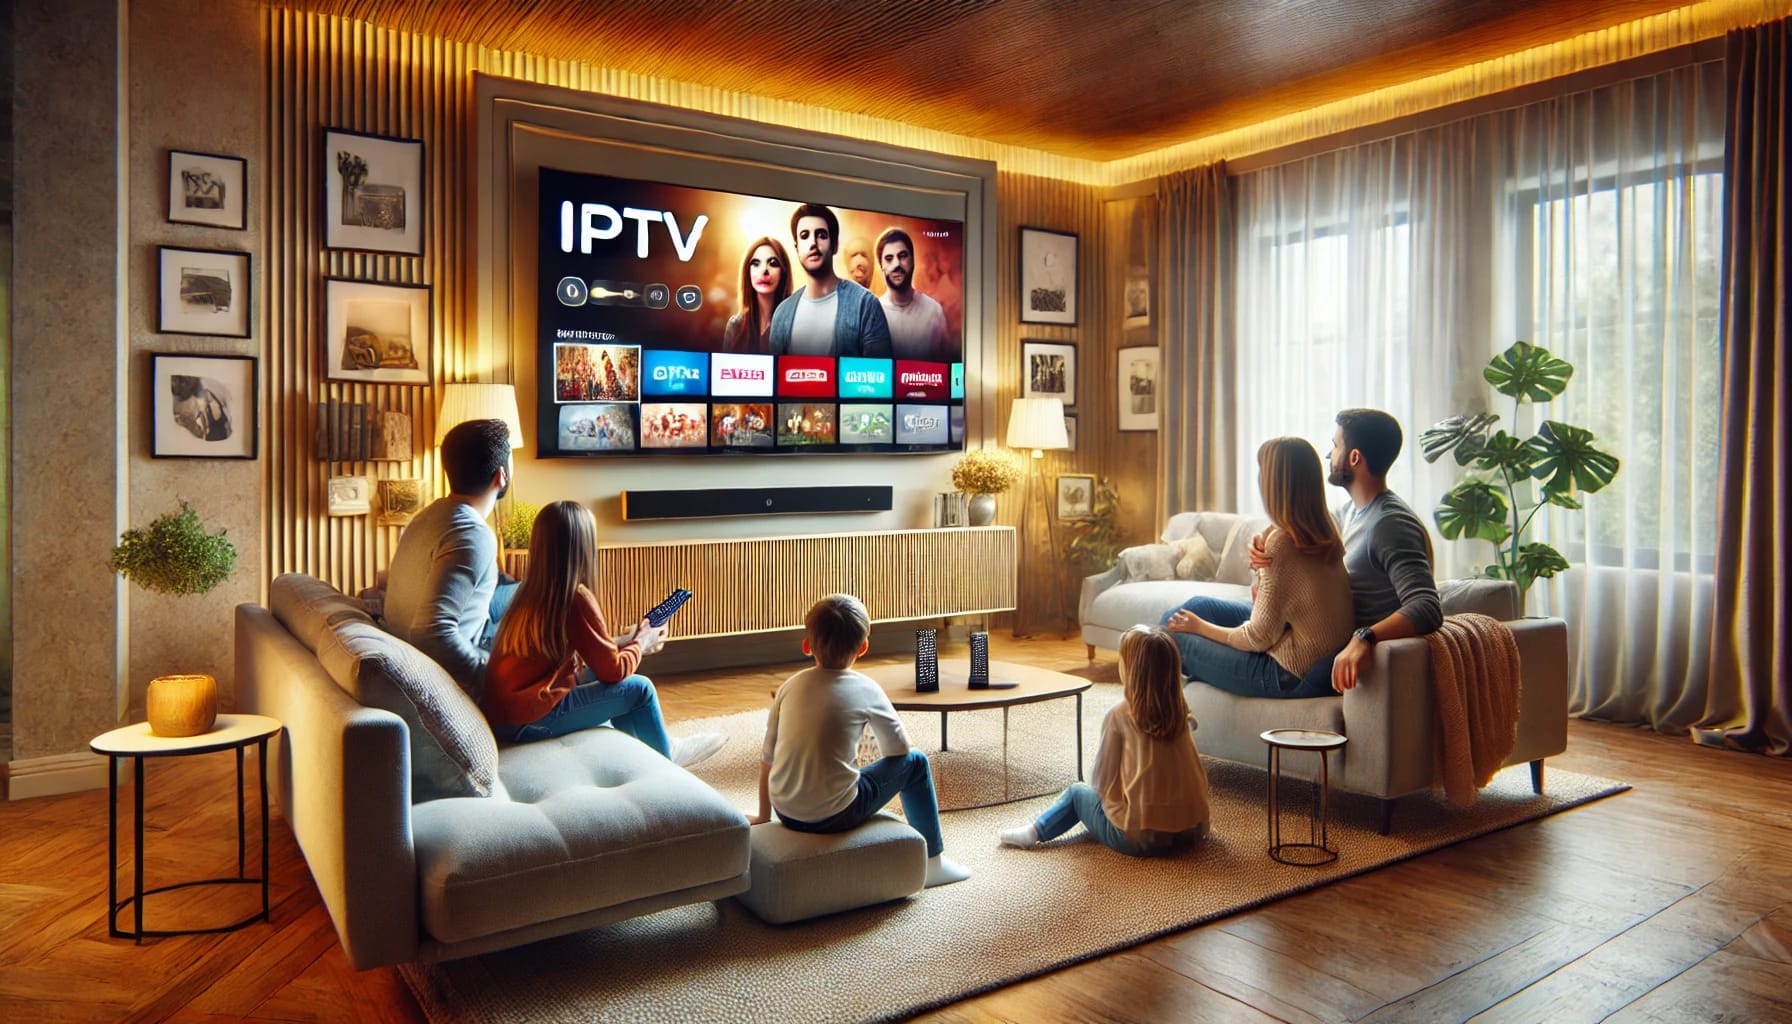 IPTV Video on demand